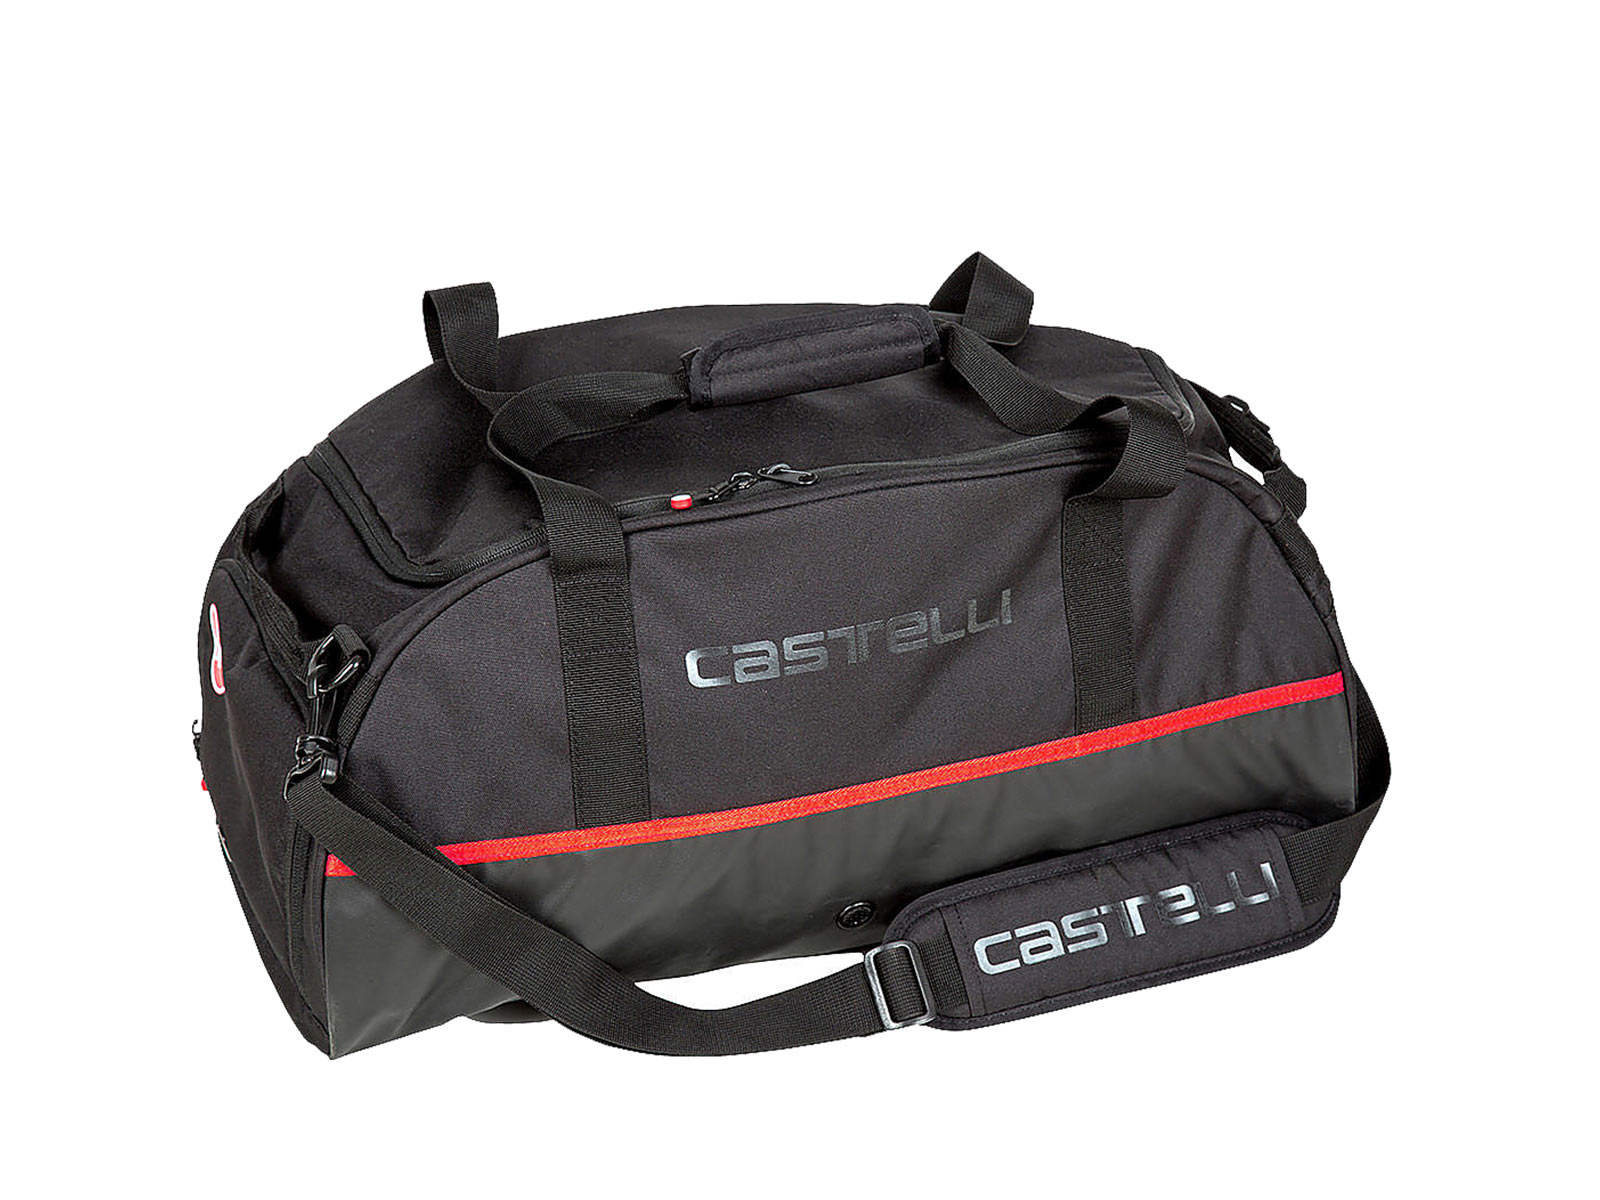 Τσάντα Castelli Gear Duffle Bag 2 - Μαύρη